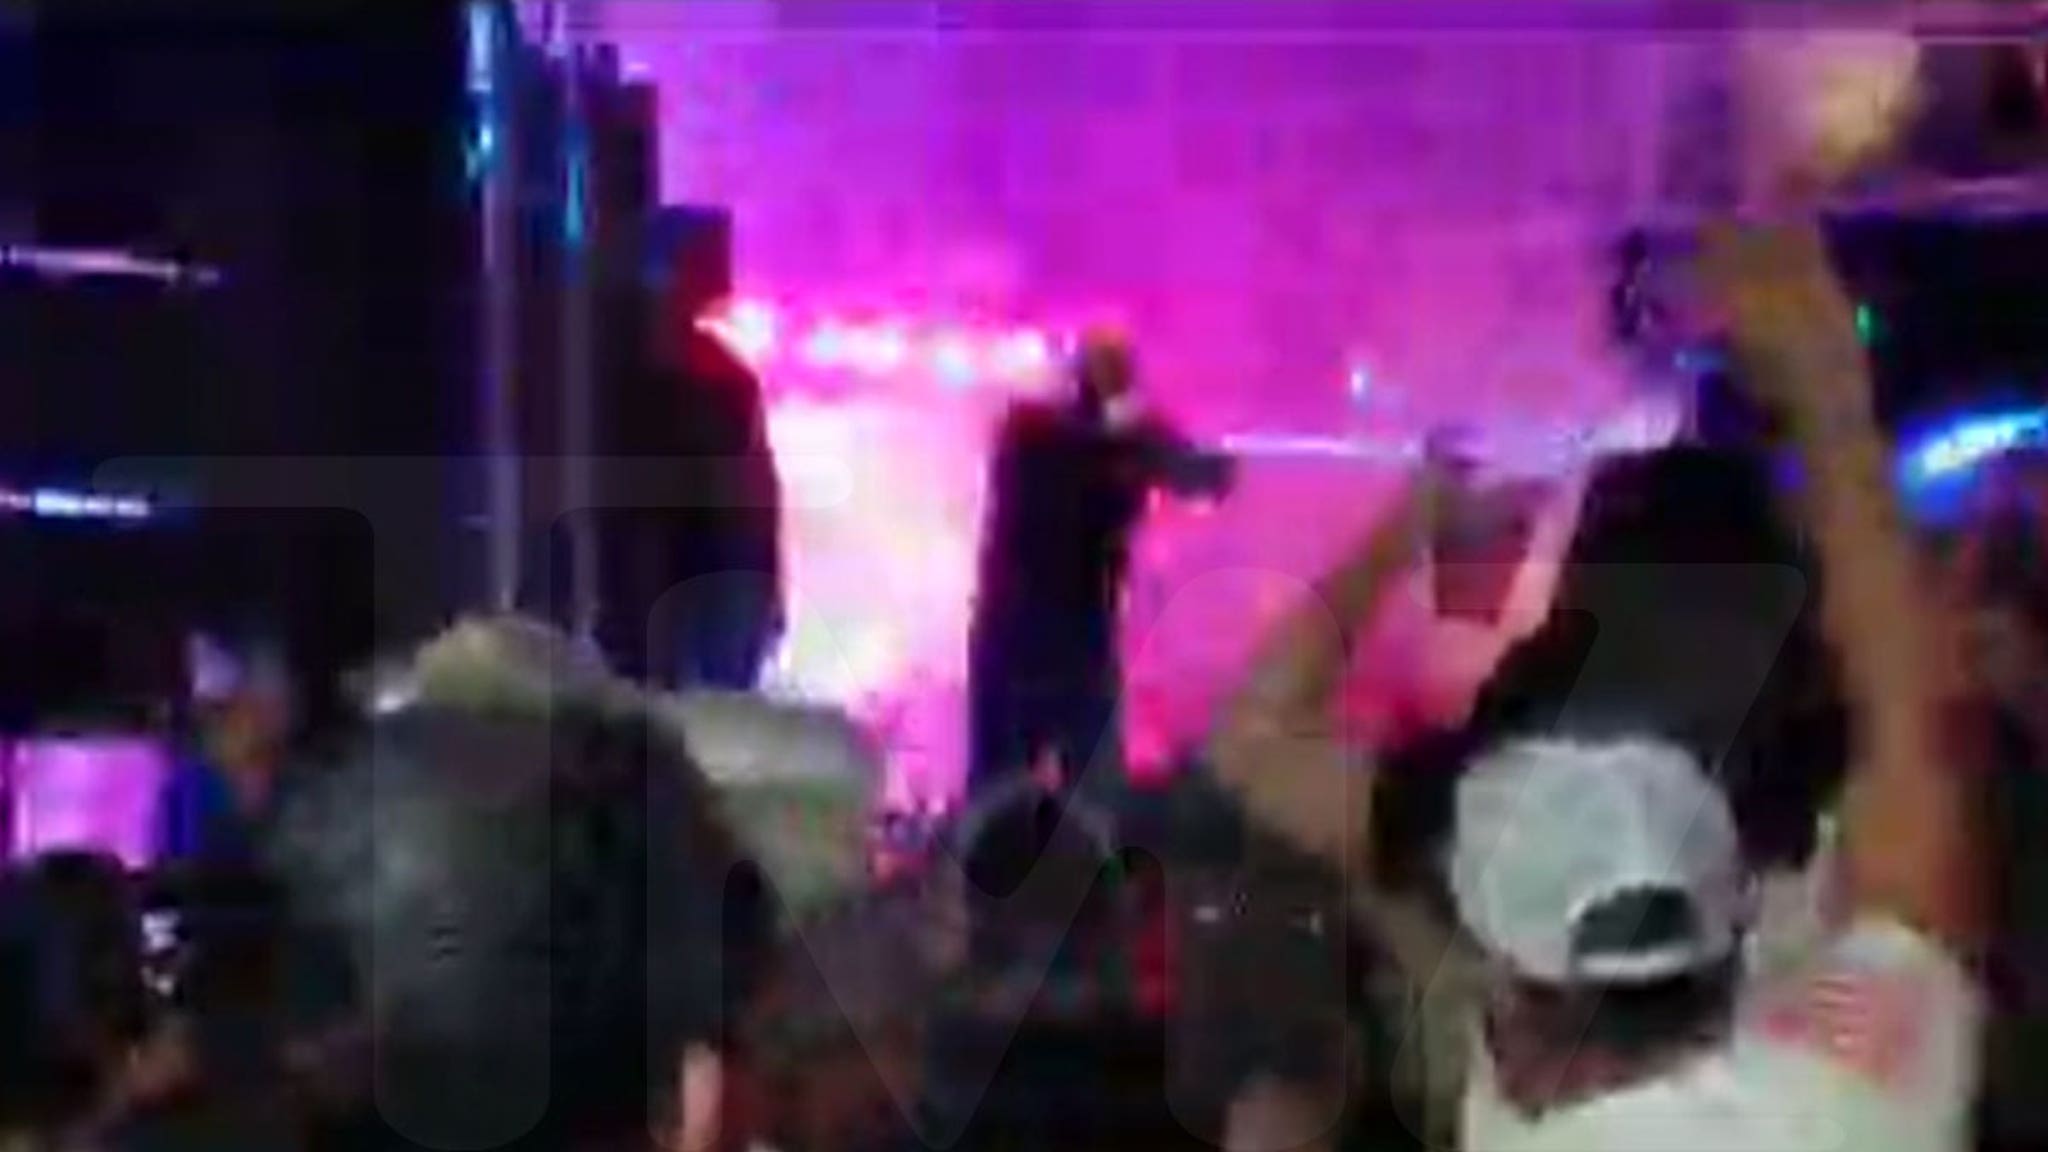 Tech N9ne Performs at a Packed Concert at Lake Ozark, MO - TMZ